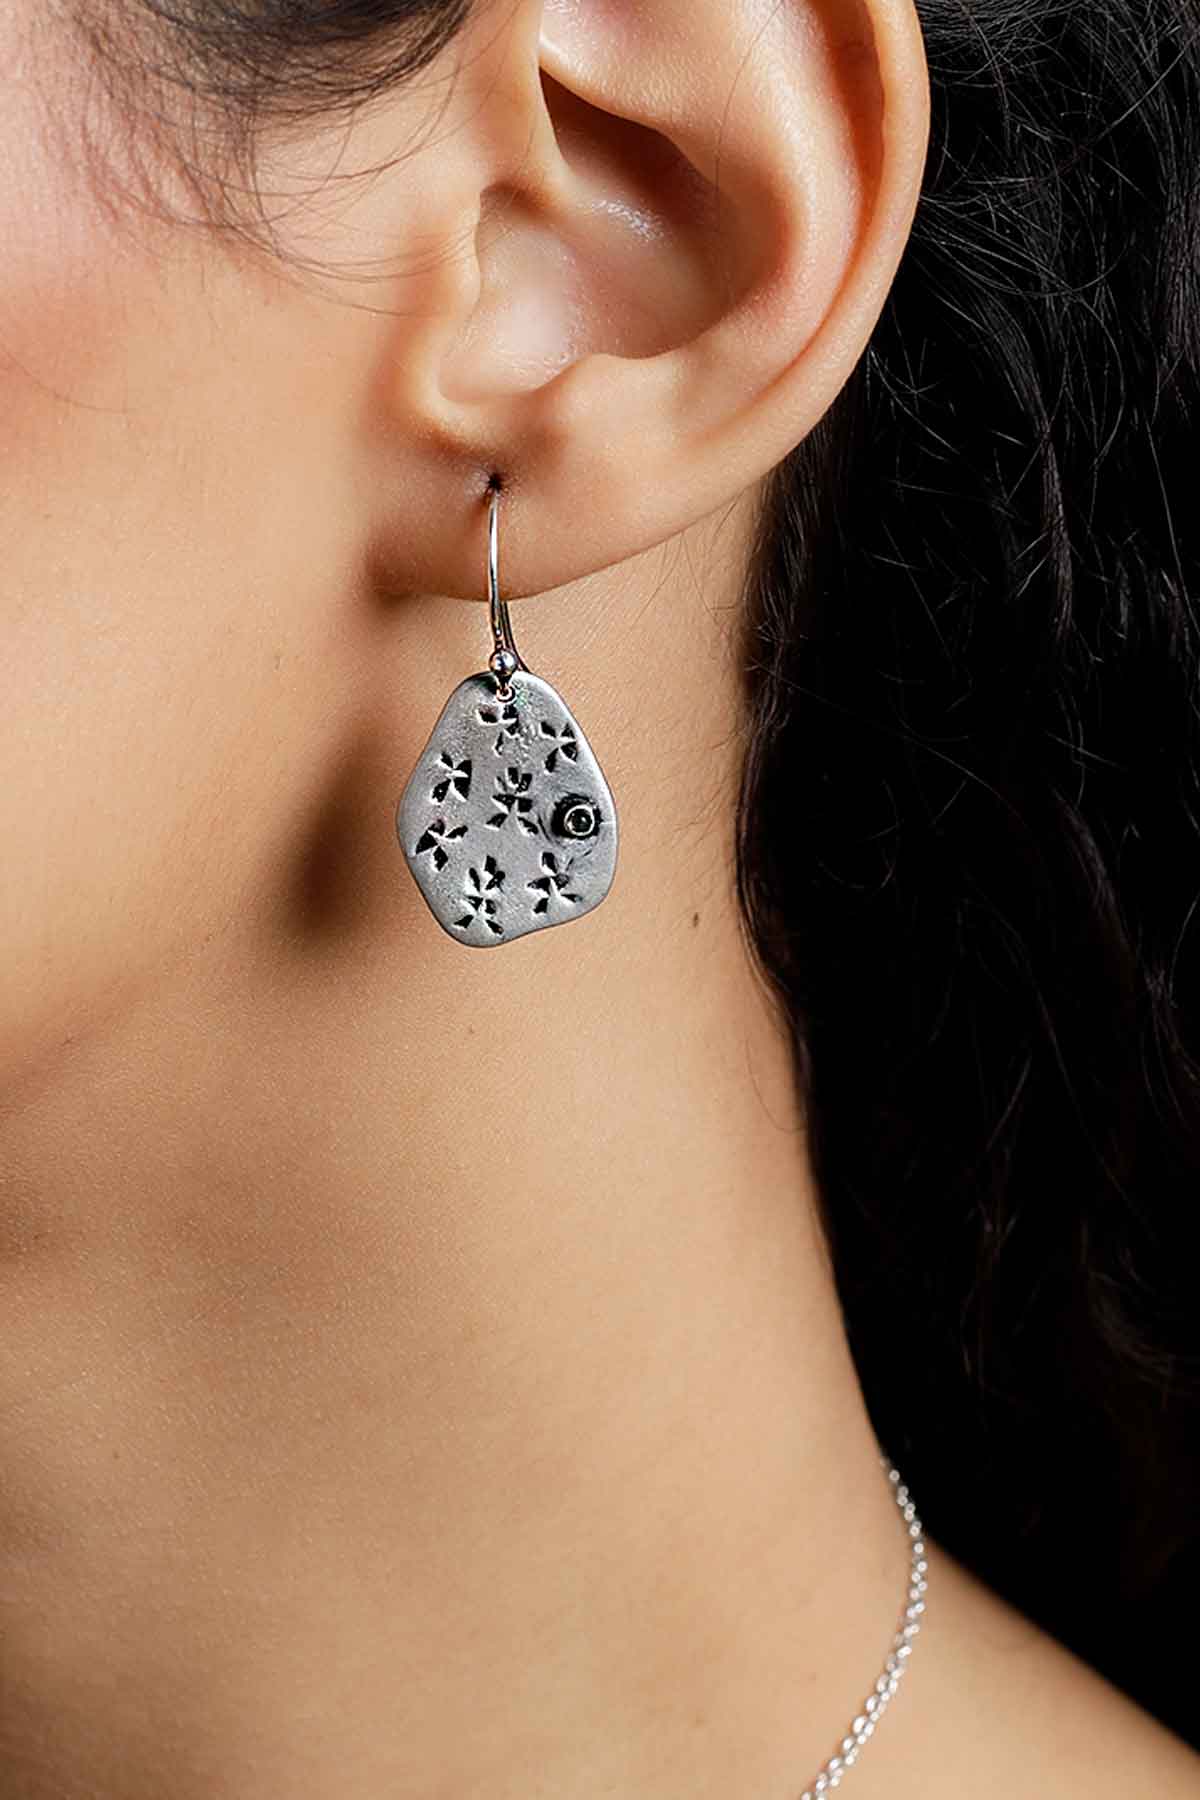 The Silver Aspen Earrings